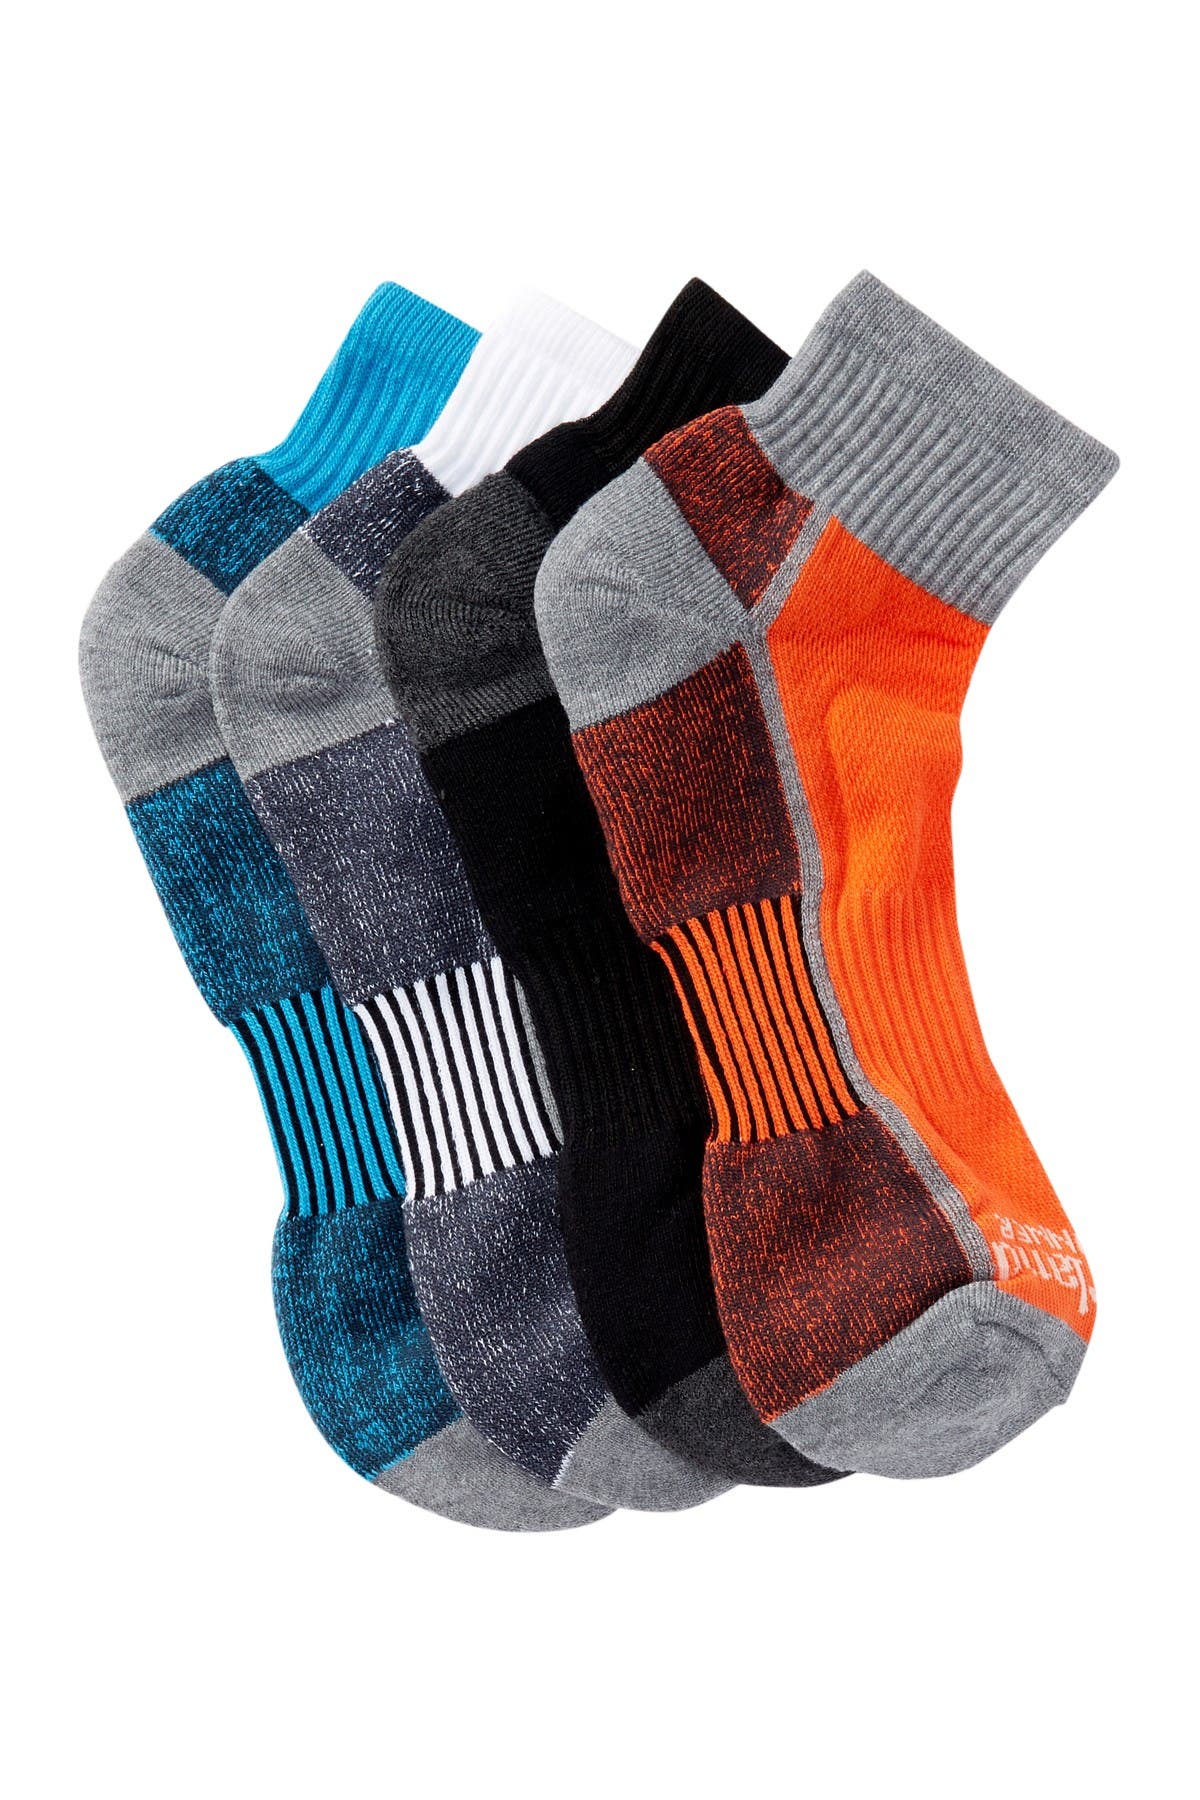 timberland men's 4 pack comfort low quarter sock